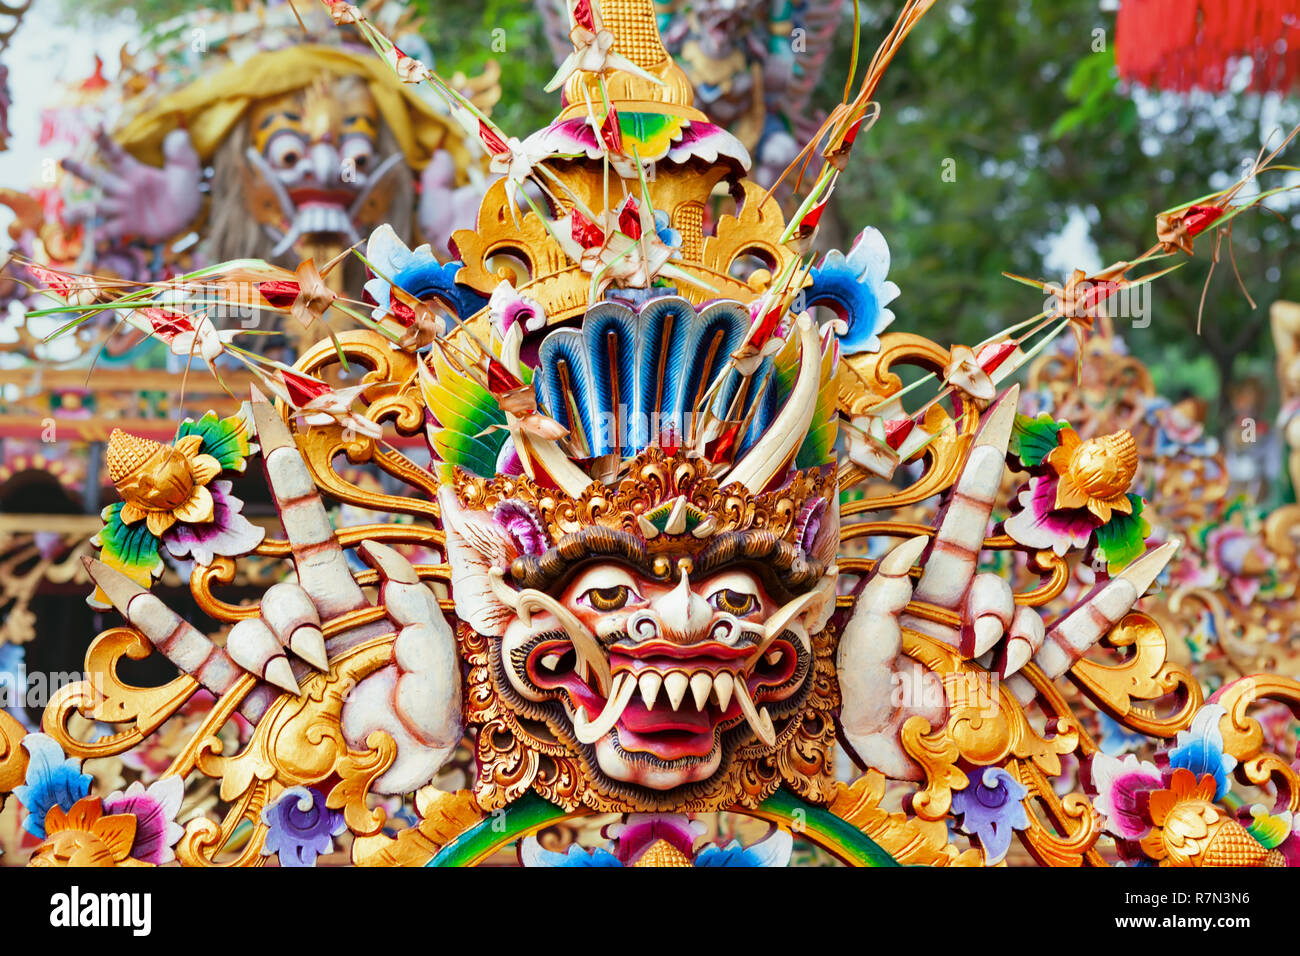 Traditioneller balinesischer Tempel alte Dekoration für religiöser Feiertag  Festival und Preisverleihung - geschnitzte Hindu Schutzgeist Bhoma. Bali  Kunst, Kultur Stockfotografie - Alamy